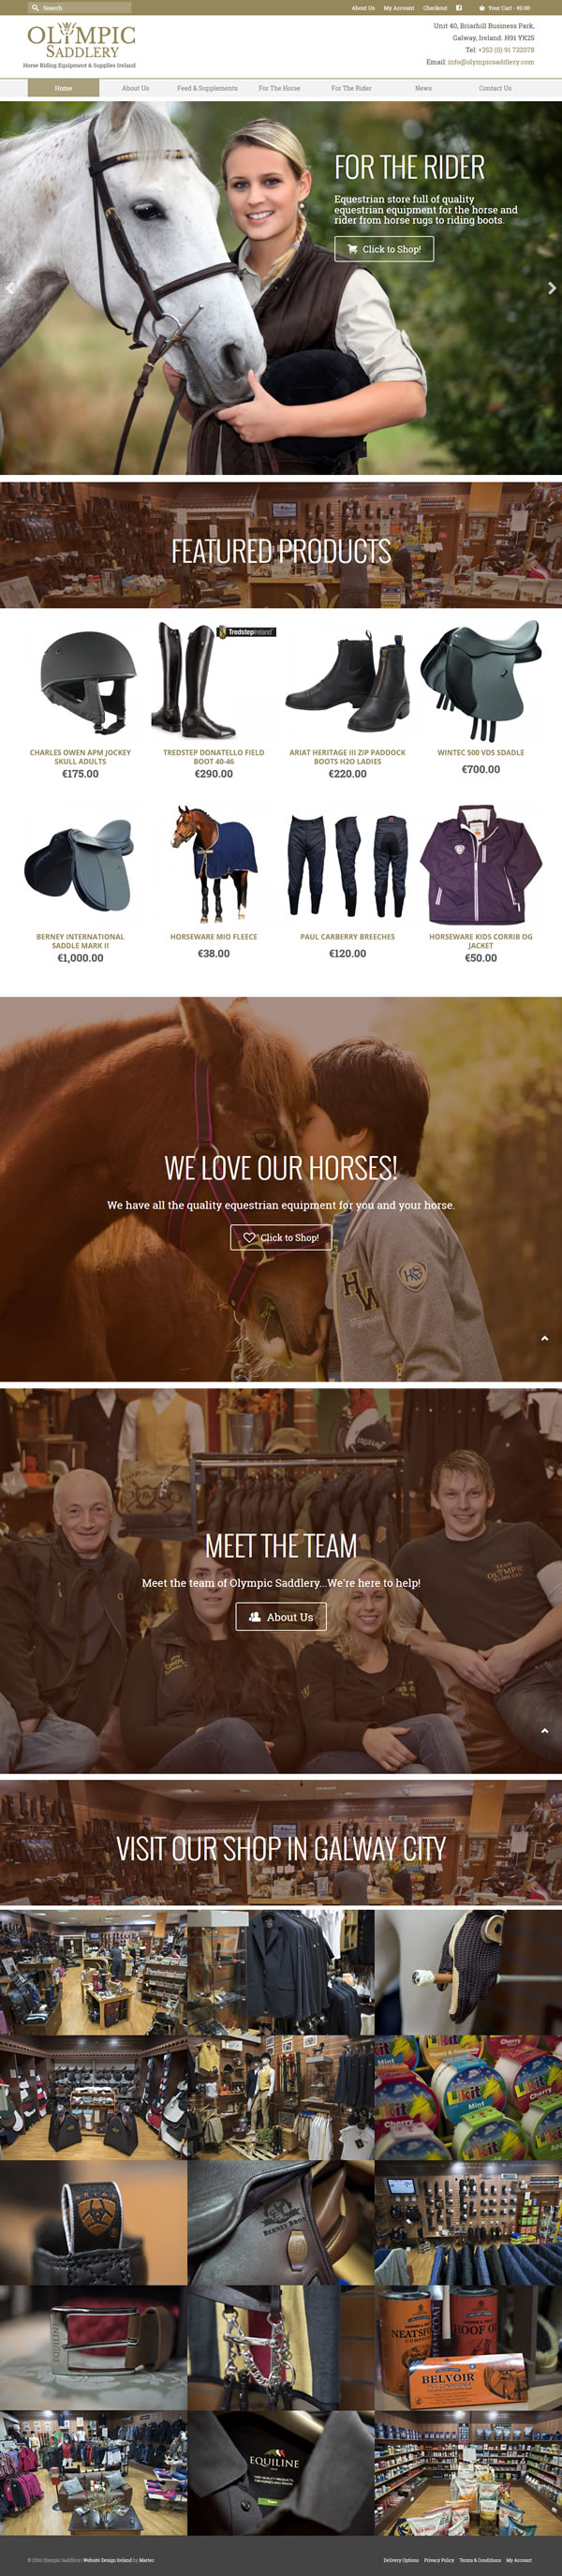 Olympic Saddlery Ecommerce Web Design Galway Ireland